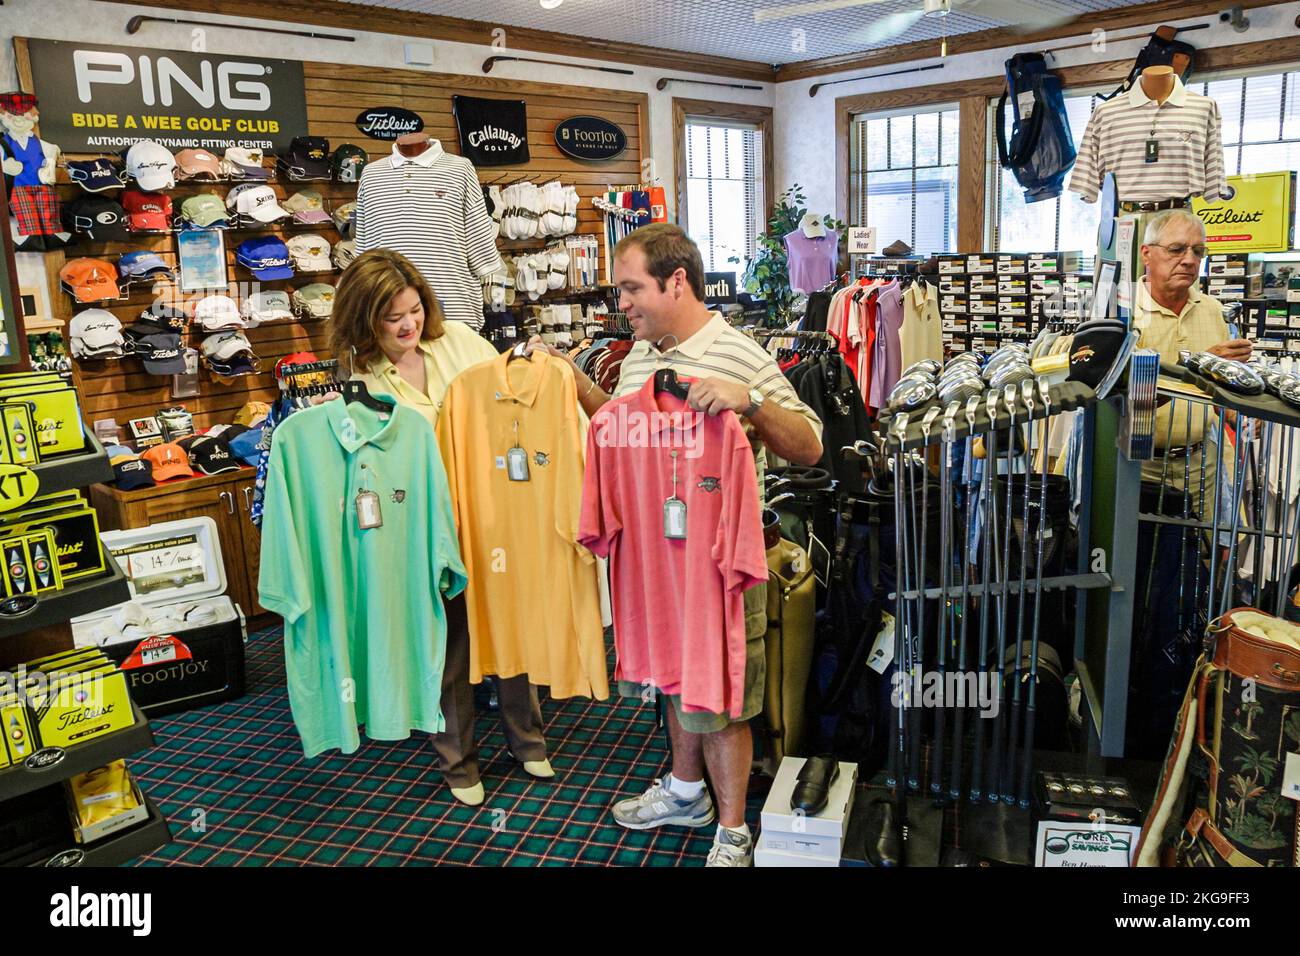 Portsmouth Virginia, Kolonialgeschichte, Bide A Wee Golf Club, Pro-Shop, Verbraucher, Besucher reisen reisen touristischer Tourismus Wahrzeichen Kultur Stockfoto